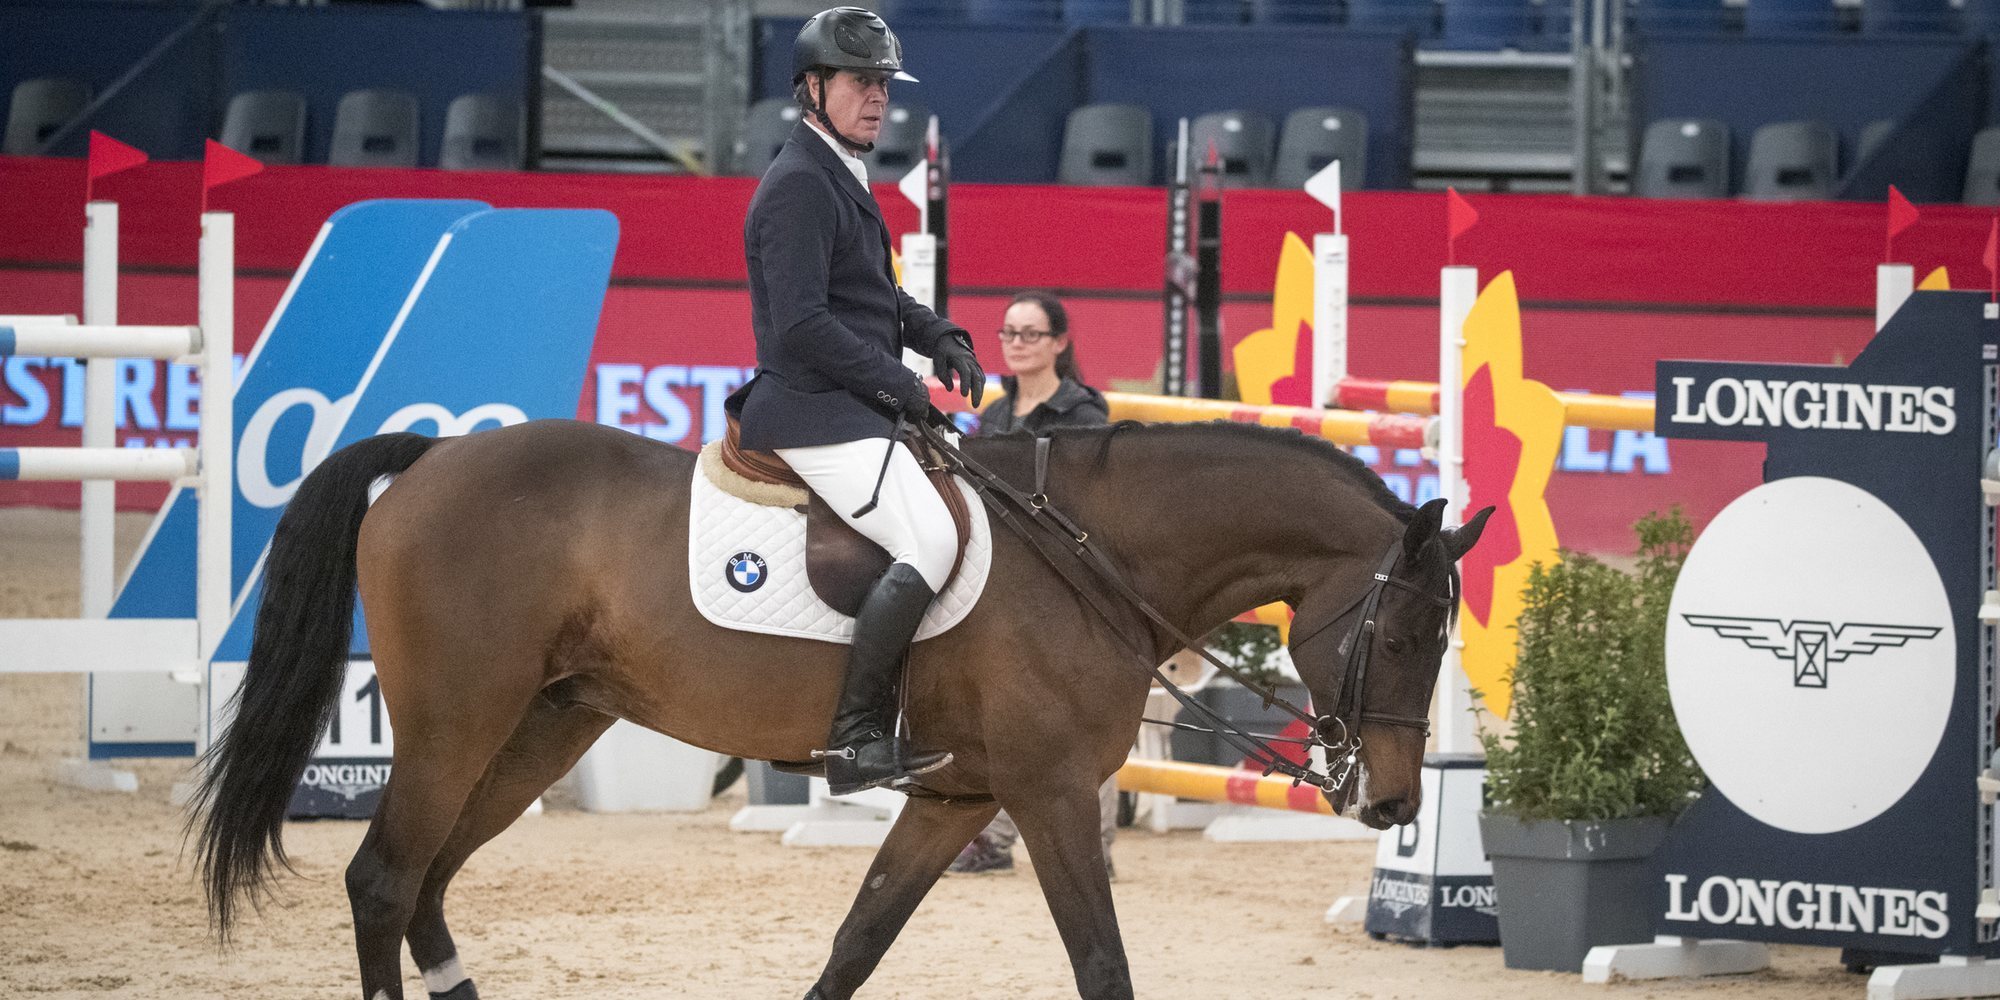 Cayetano Martínez de Irujo vuelve a competir en la Madrid Horse Week después de su último percance de salud